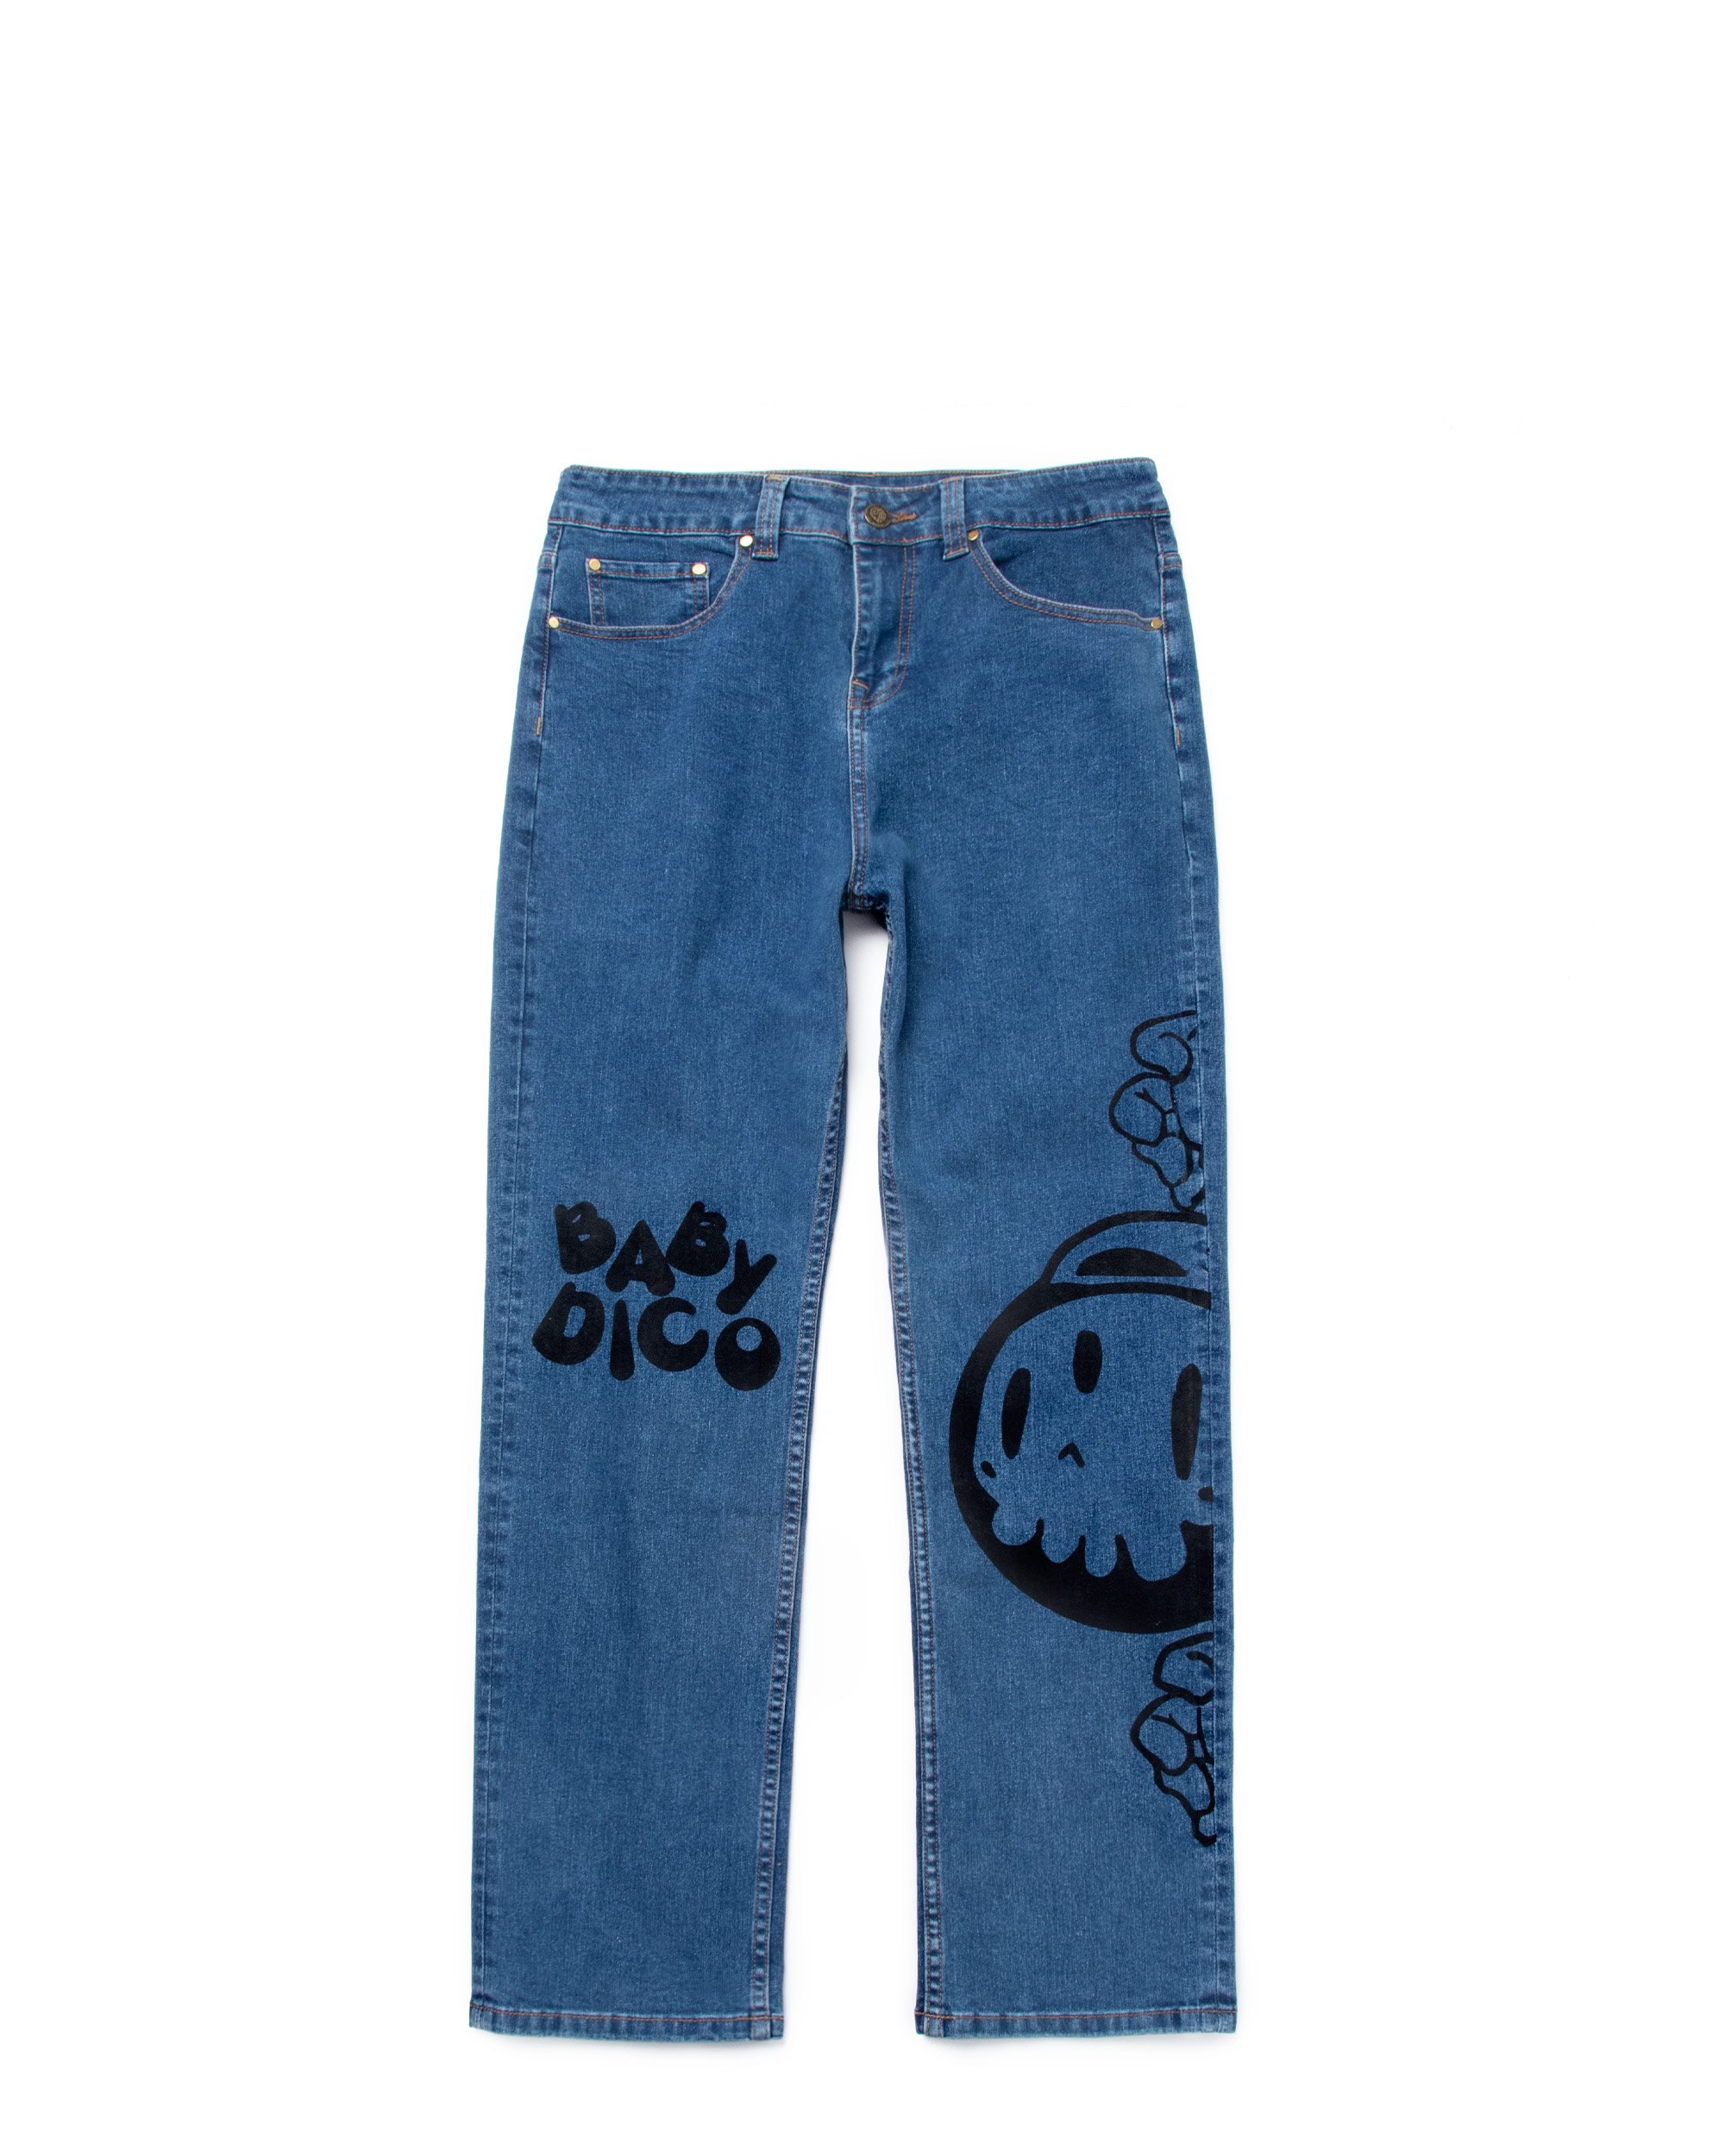 Dico Boy Jeans - Blue Jean